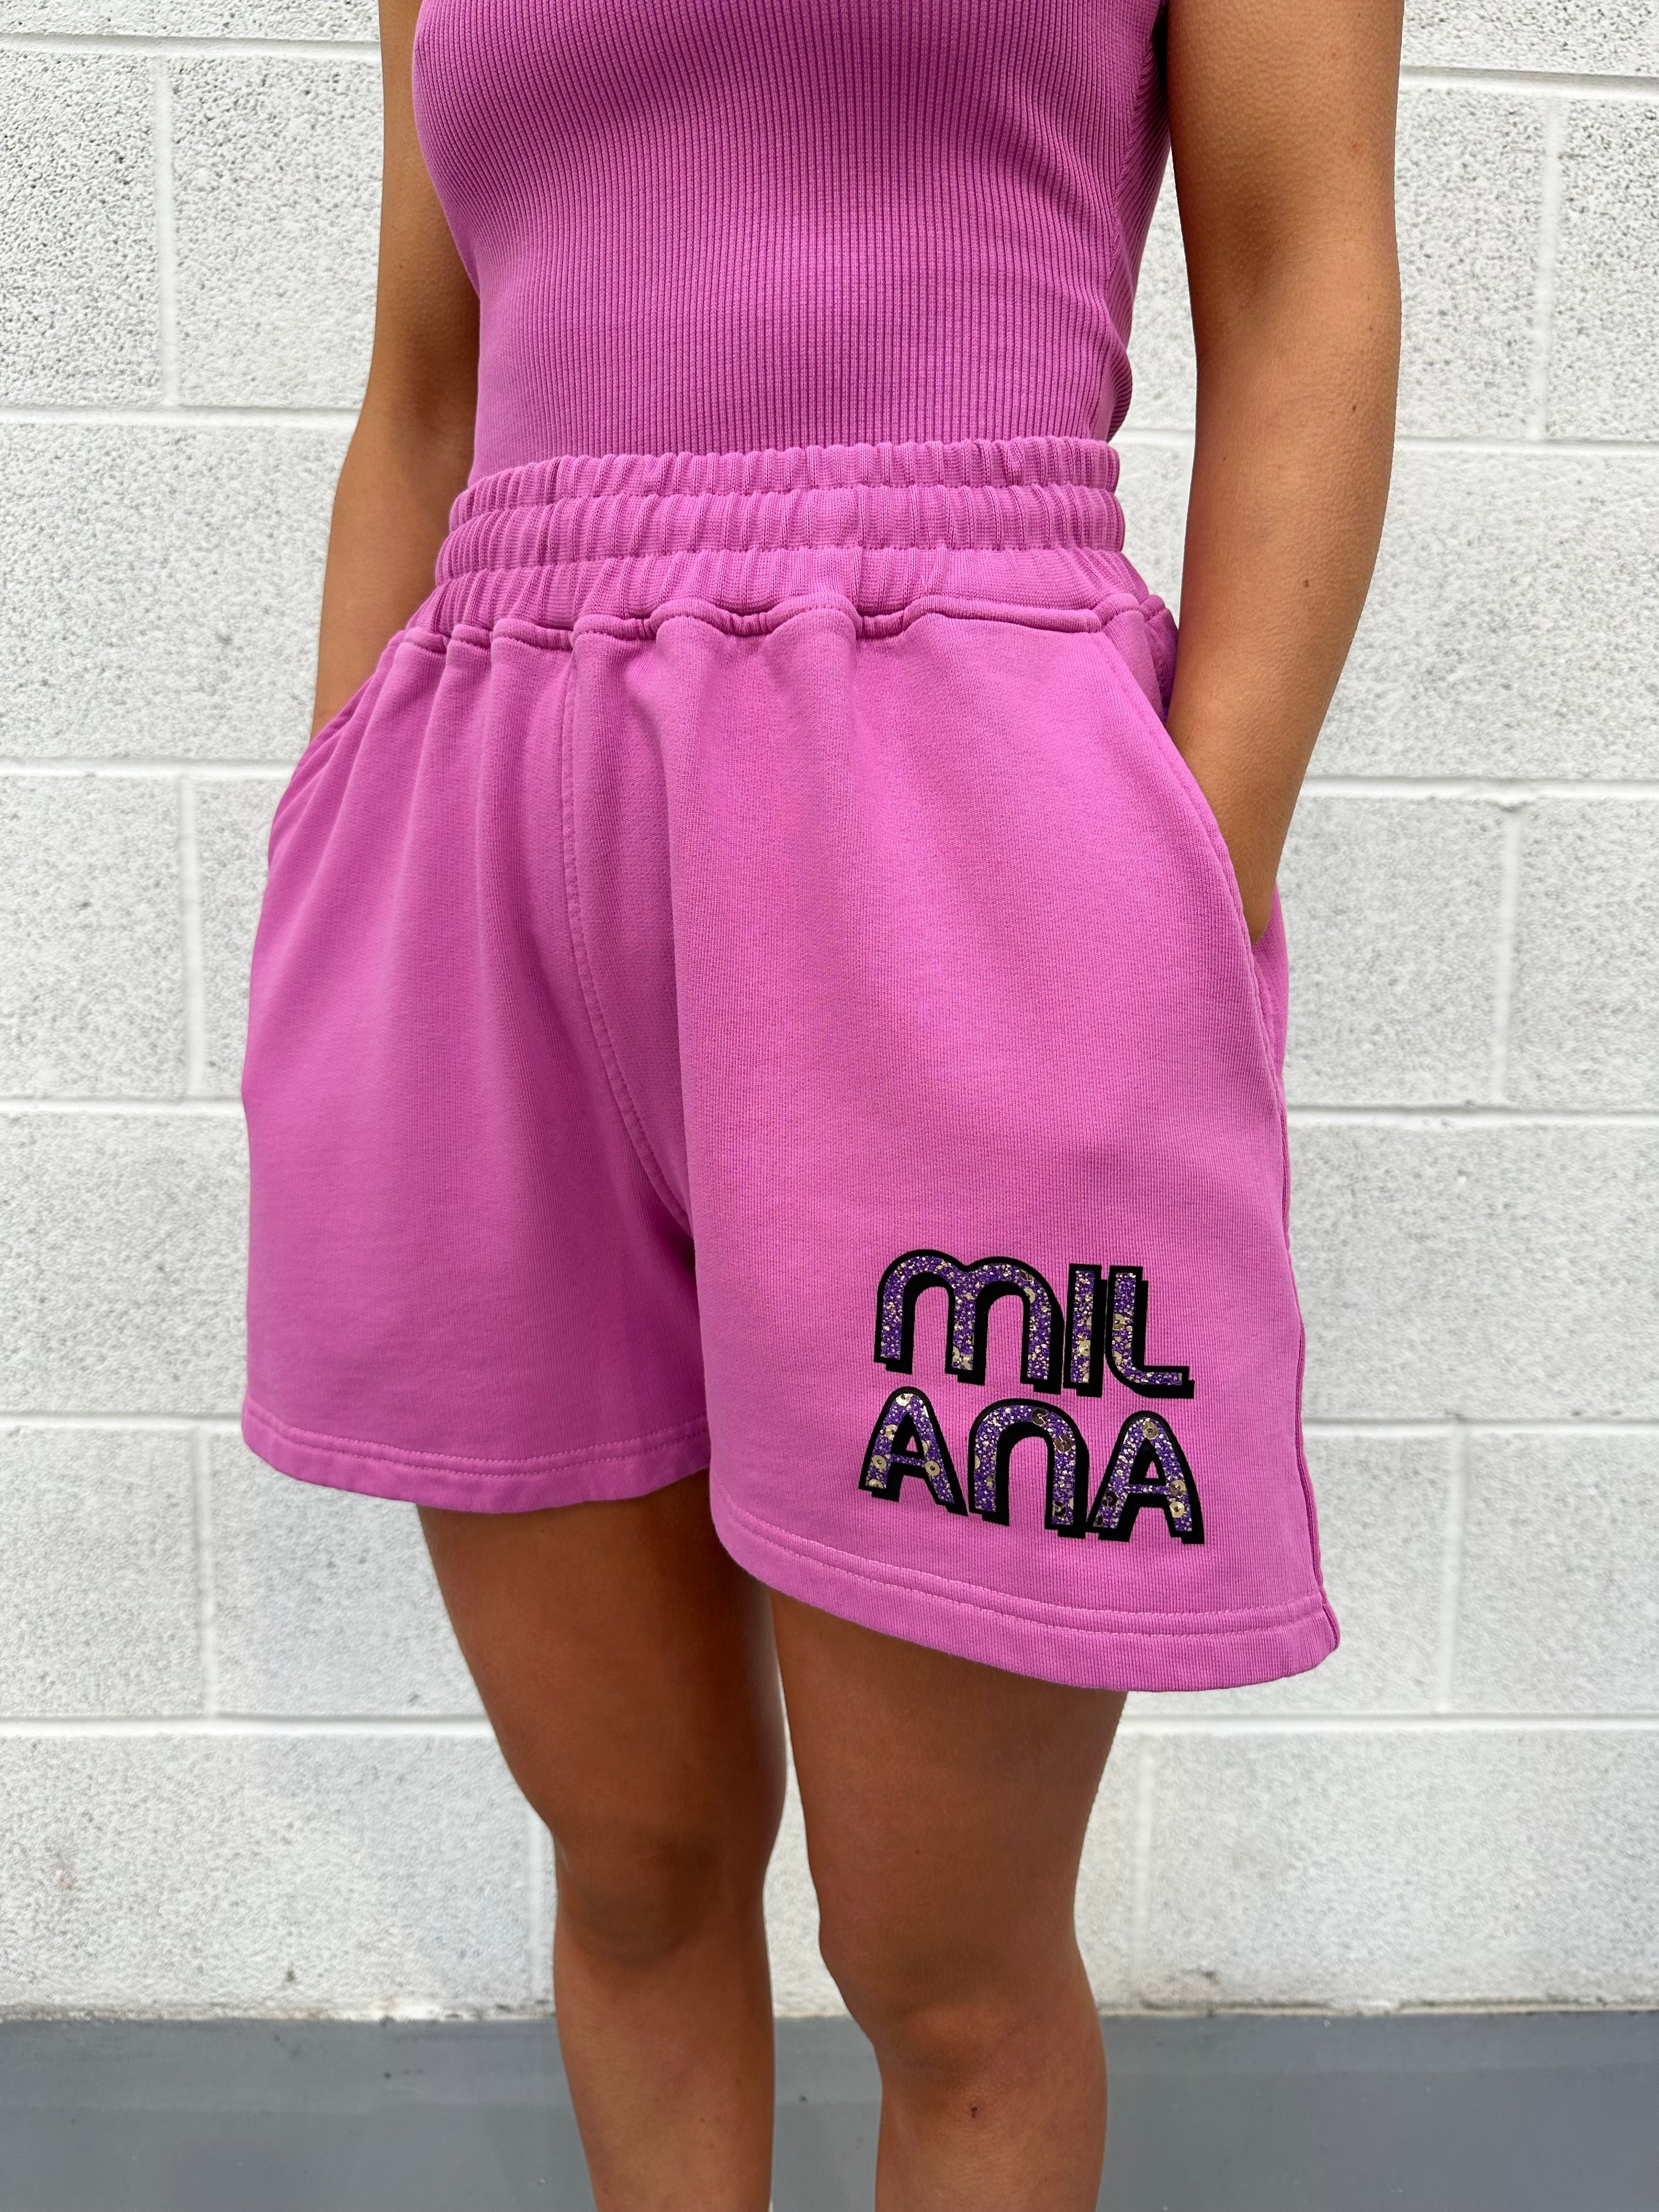 Raspberry Embellished Mini Shorts.